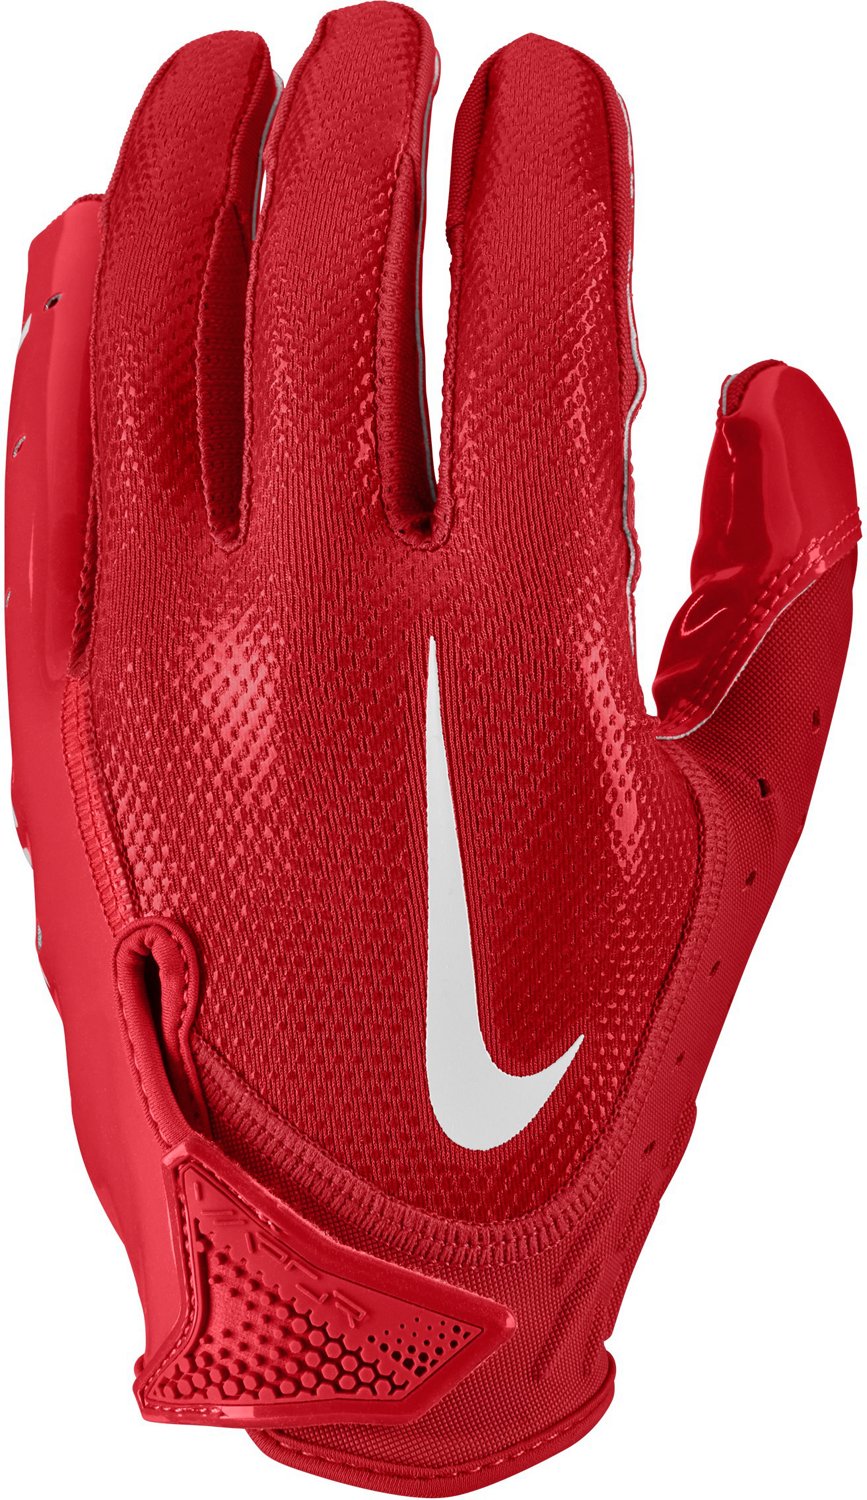 Nike Adult Vapor Jet 7.0 NFL Combine Football Gloves - Frank's Sports Shop